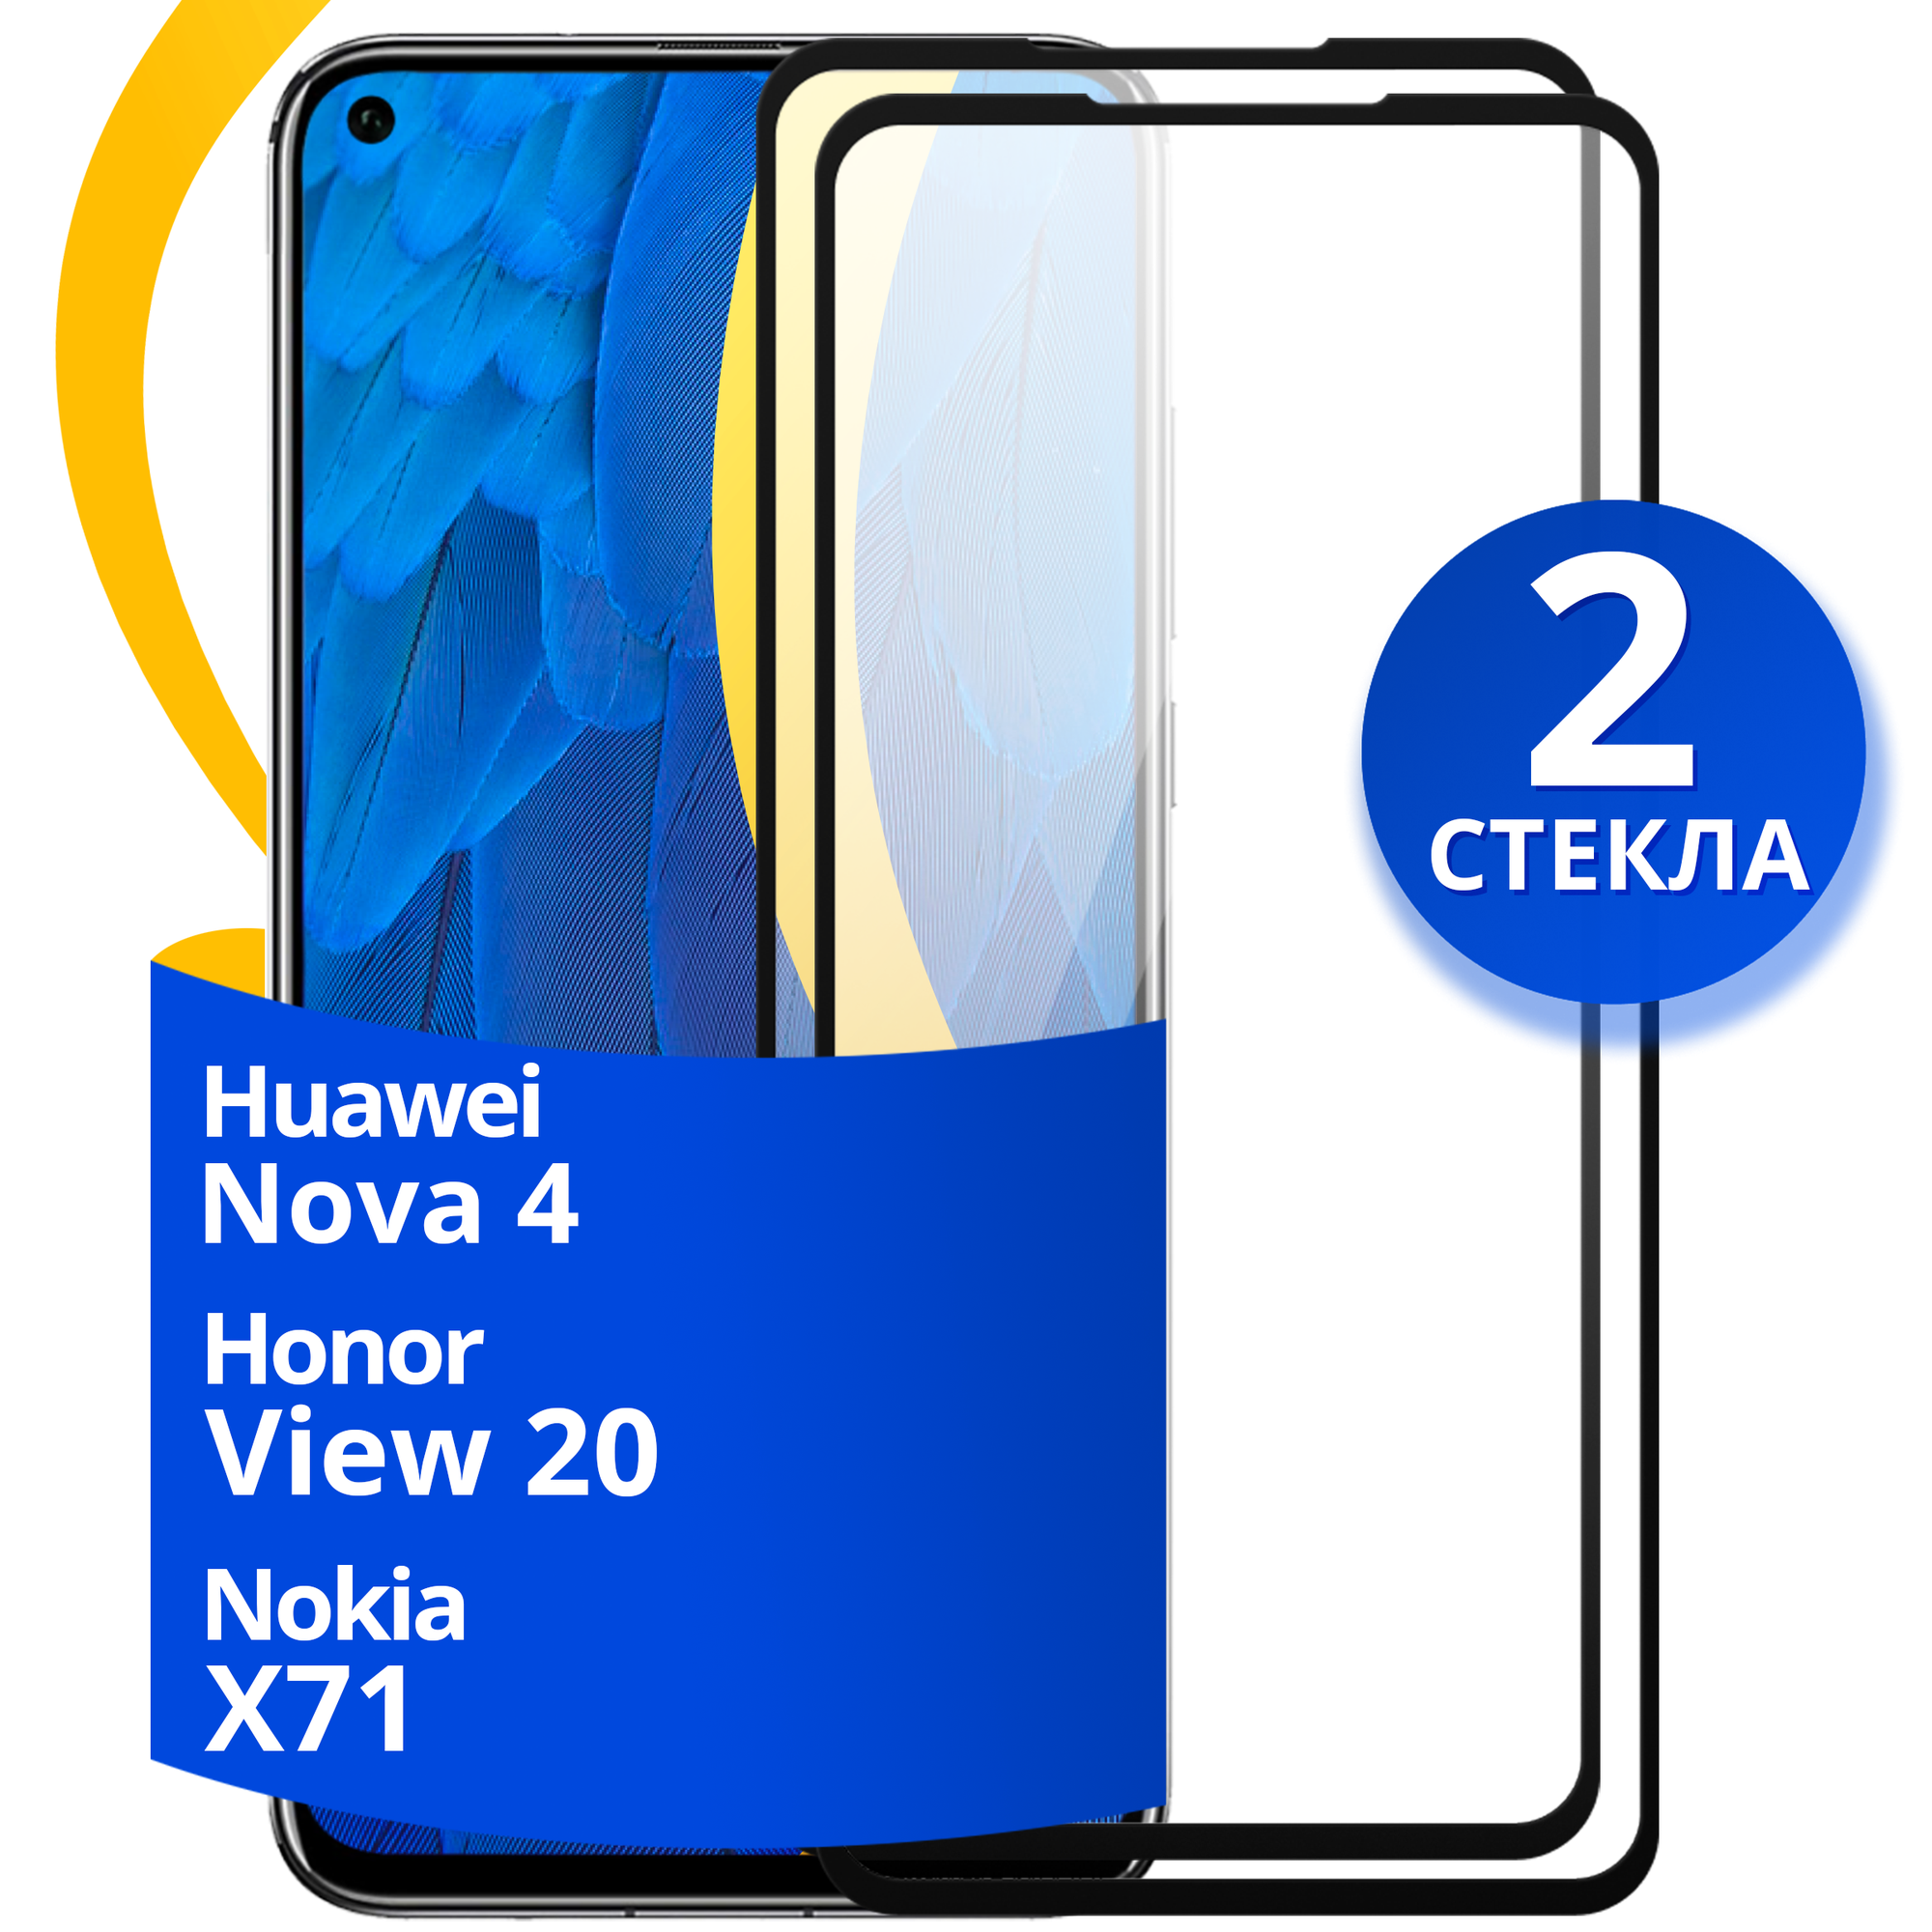 Глянцевое защитное стекло для телефона Huawei Nova 4, Honor View 20 и Nokia X71 / Противоударное стекло на Хуавей Нова 4, Хонор Вью 20 и Нокиа Х71